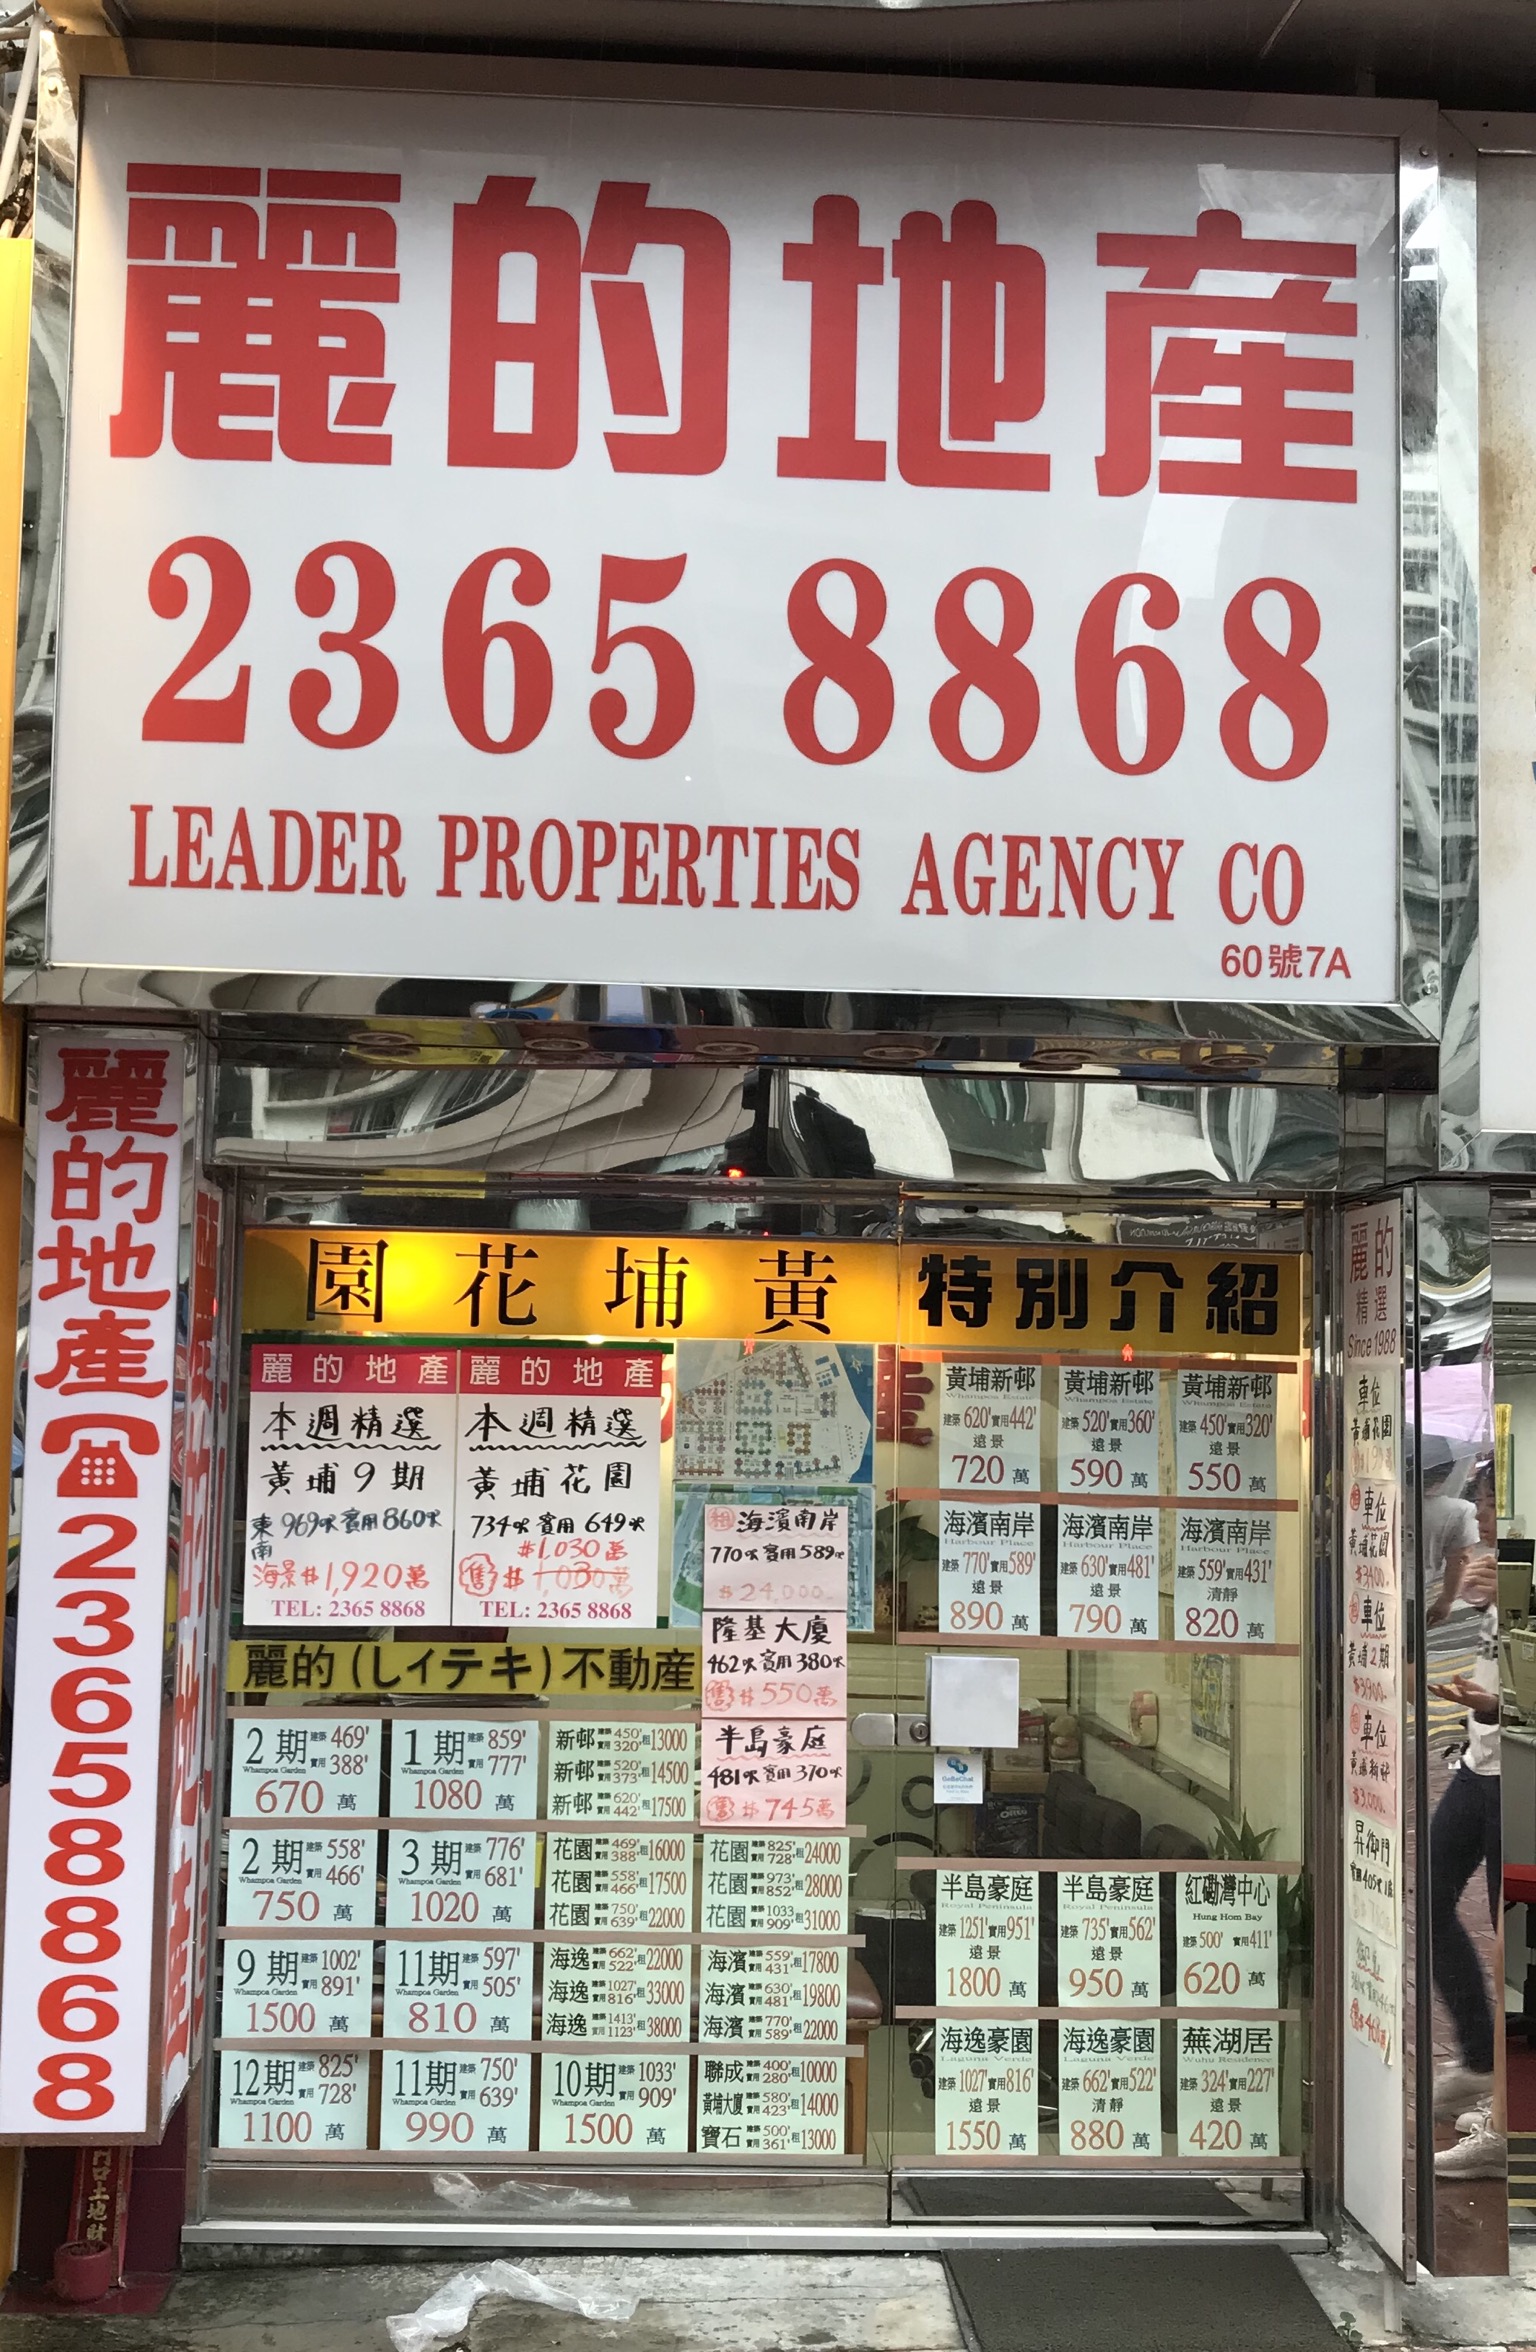 地產代理公司 Estate Agent: 麗的地產